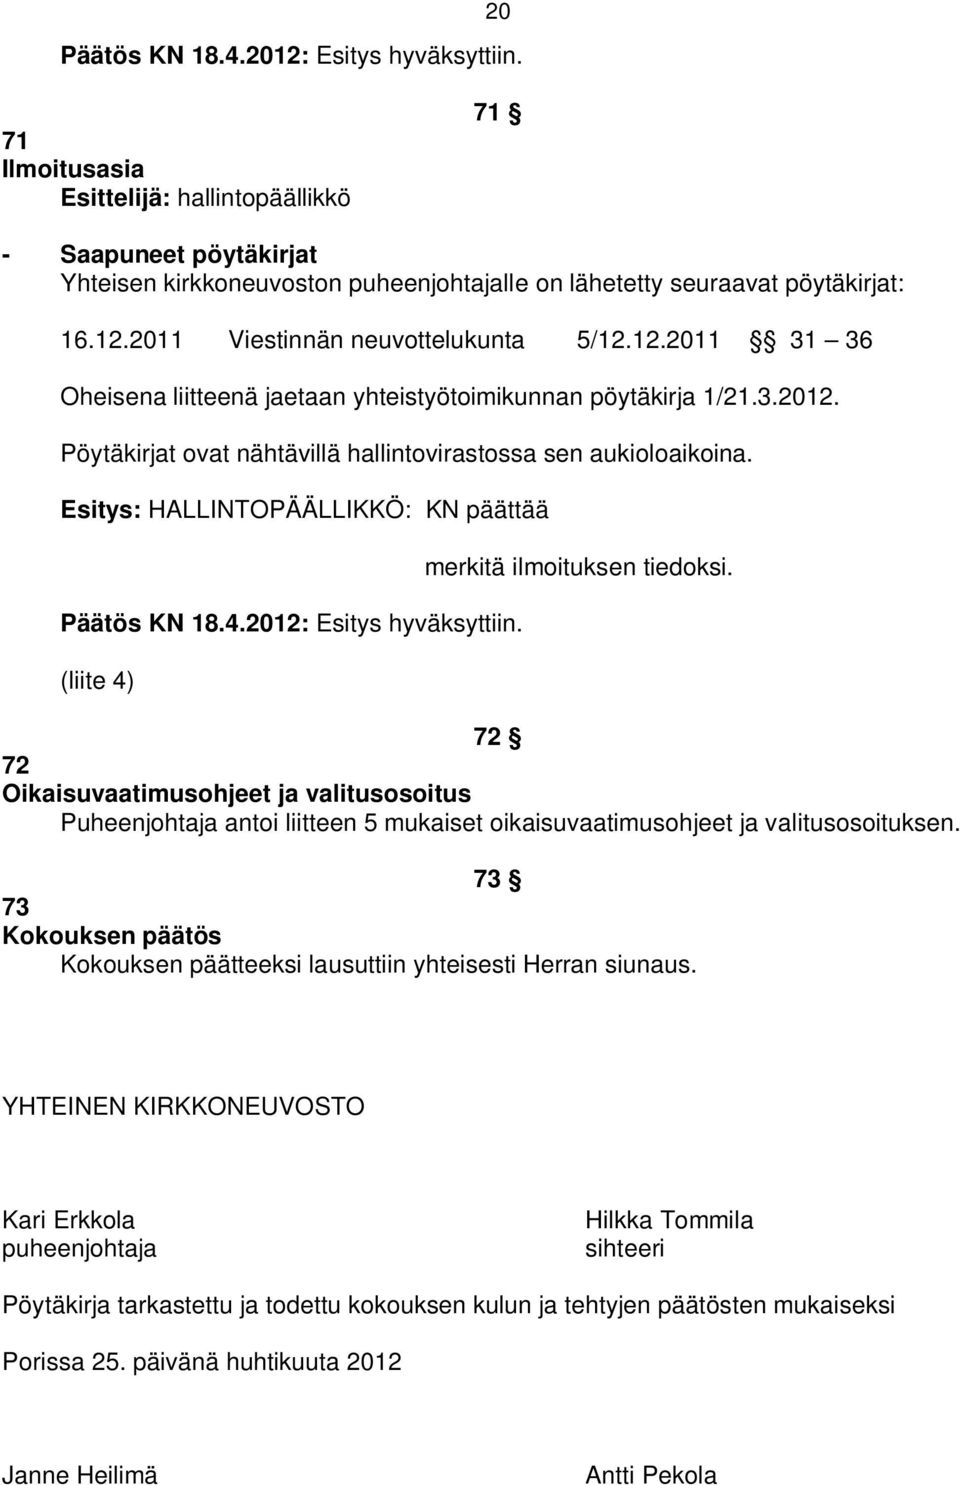 Esitys: HALLINTOPÄÄLLIKKÖ: KN päättää Päätös KN 18.4.2012: Esitys hyväksyttiin. (liite 4) merkitä ilmoituksen tiedoksi.